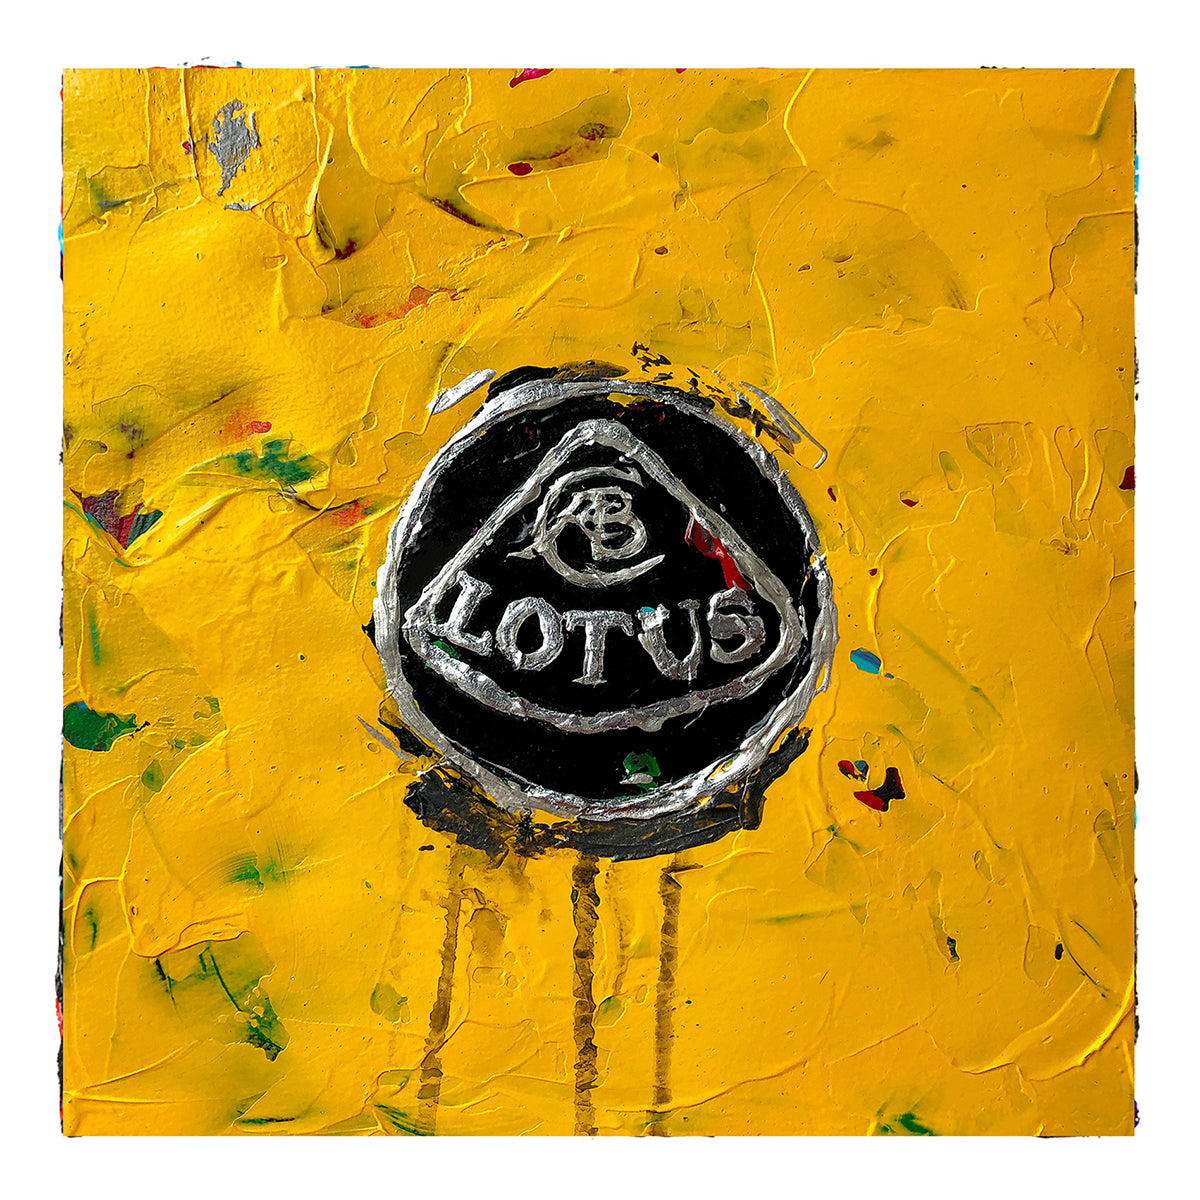 Lotus Emblem 1 - Micro